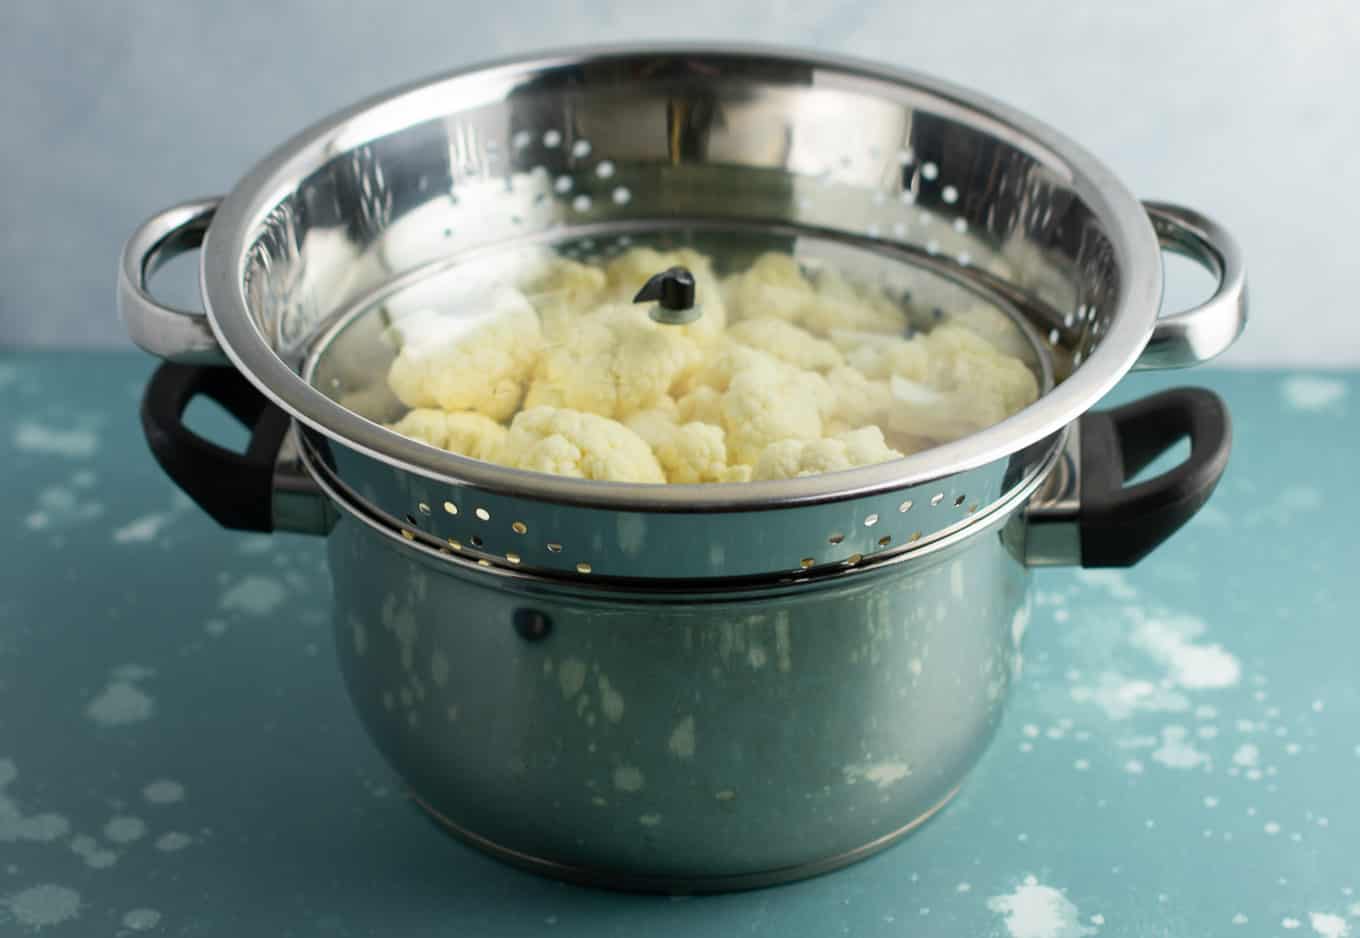 How To Steam Cauliflower Build Your Bite,Gluten Free Apple Crumble Pie